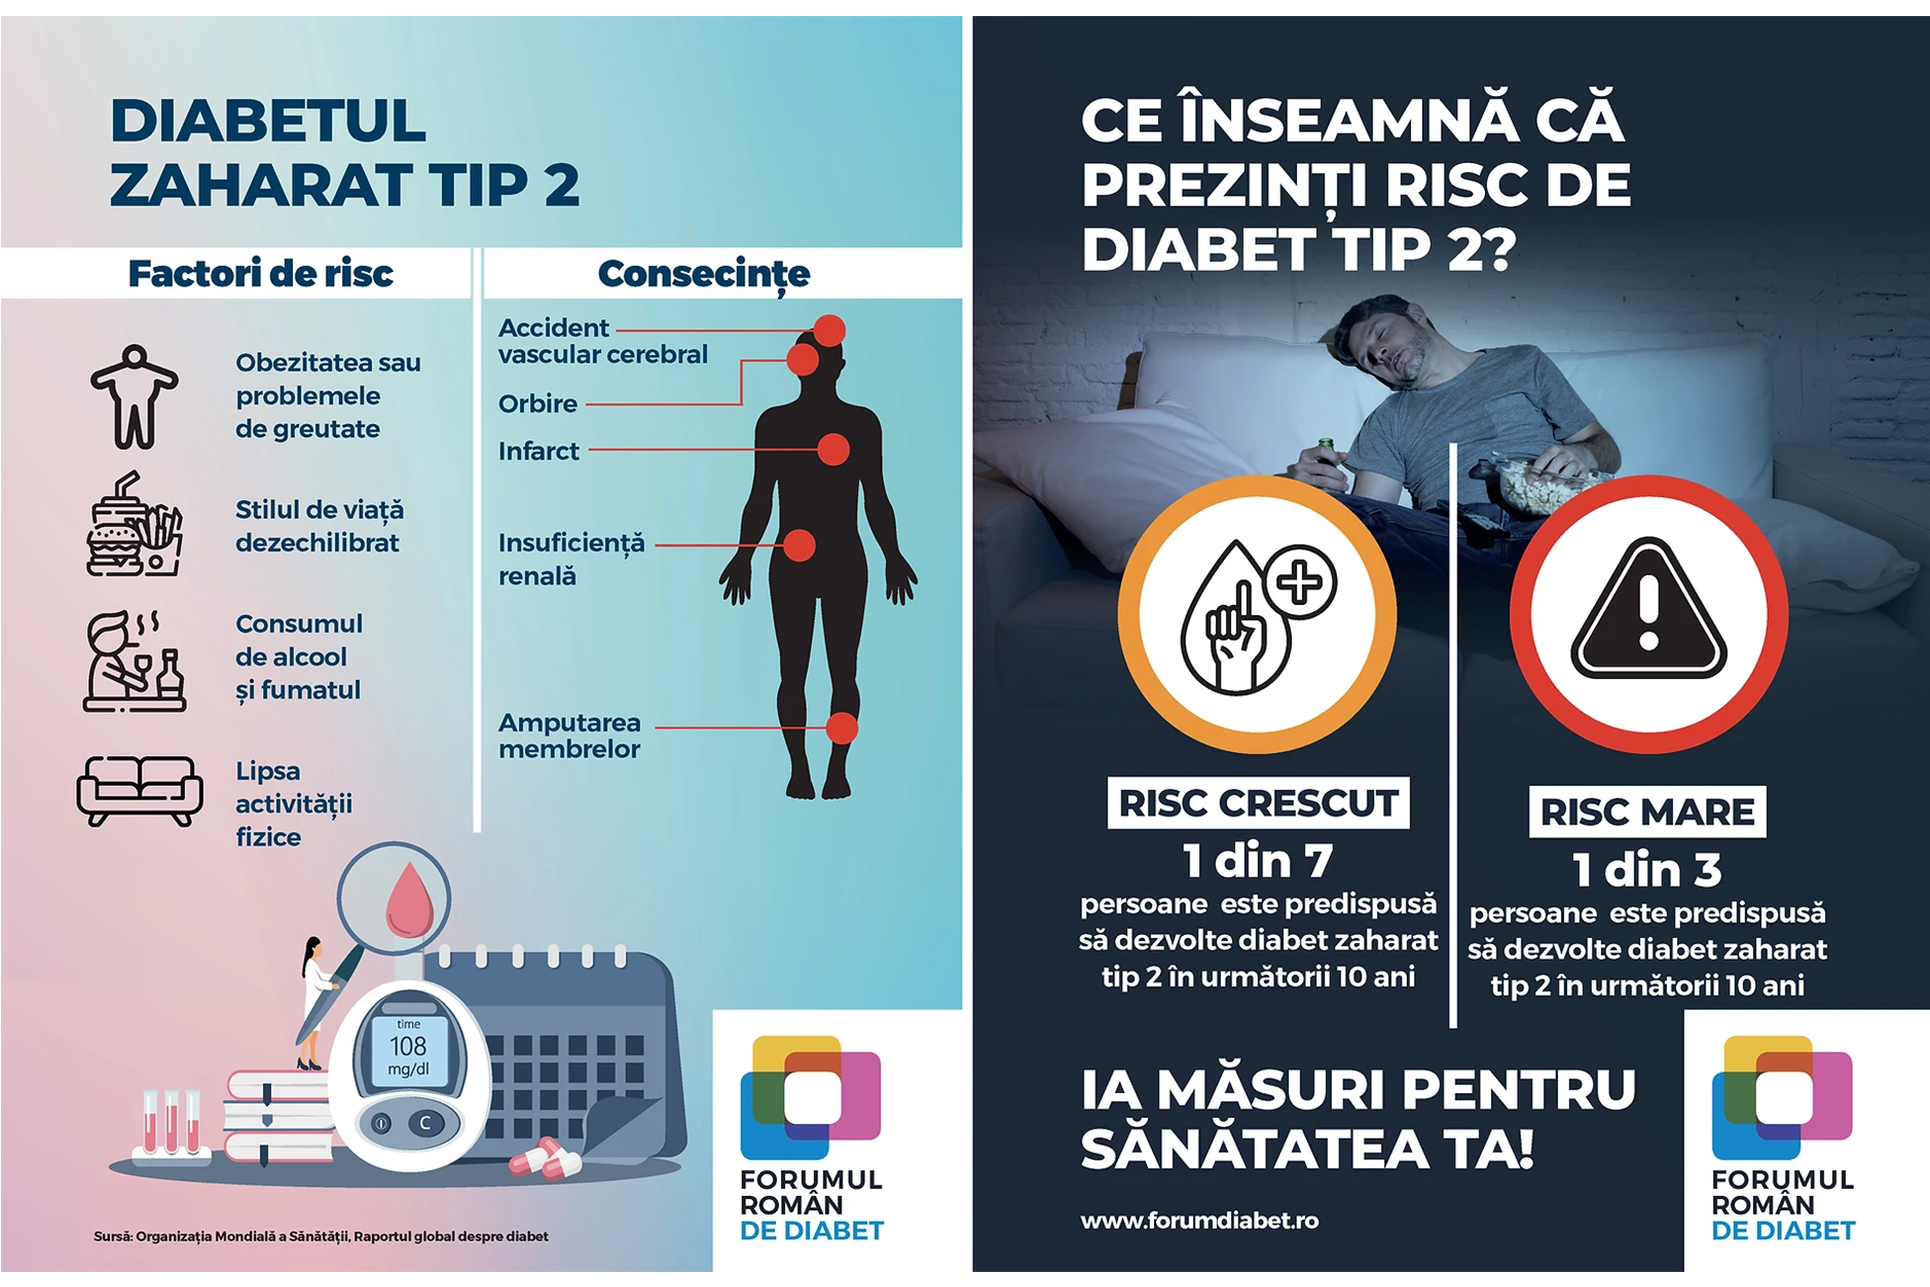 Evaluarea riscului de diabet zaharat tip 2